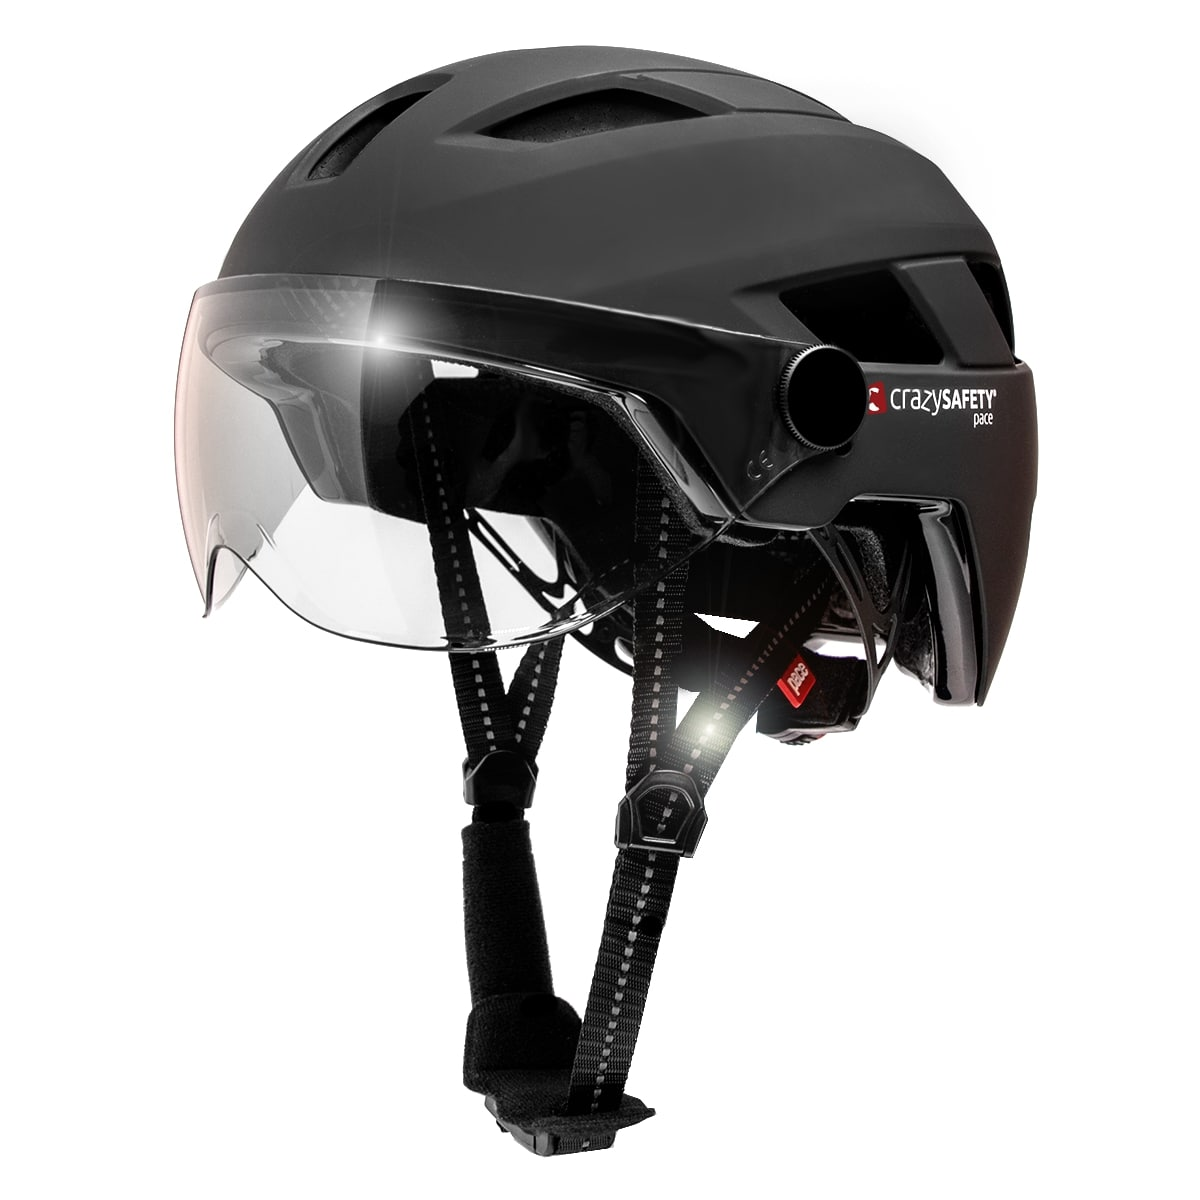 Erwachsene| SAFETY Schwarz für |EN1078 E-bike zertifiziert, mit 55-61 cm, cm Visier|Crazy Helm Safety Black) CRAZY